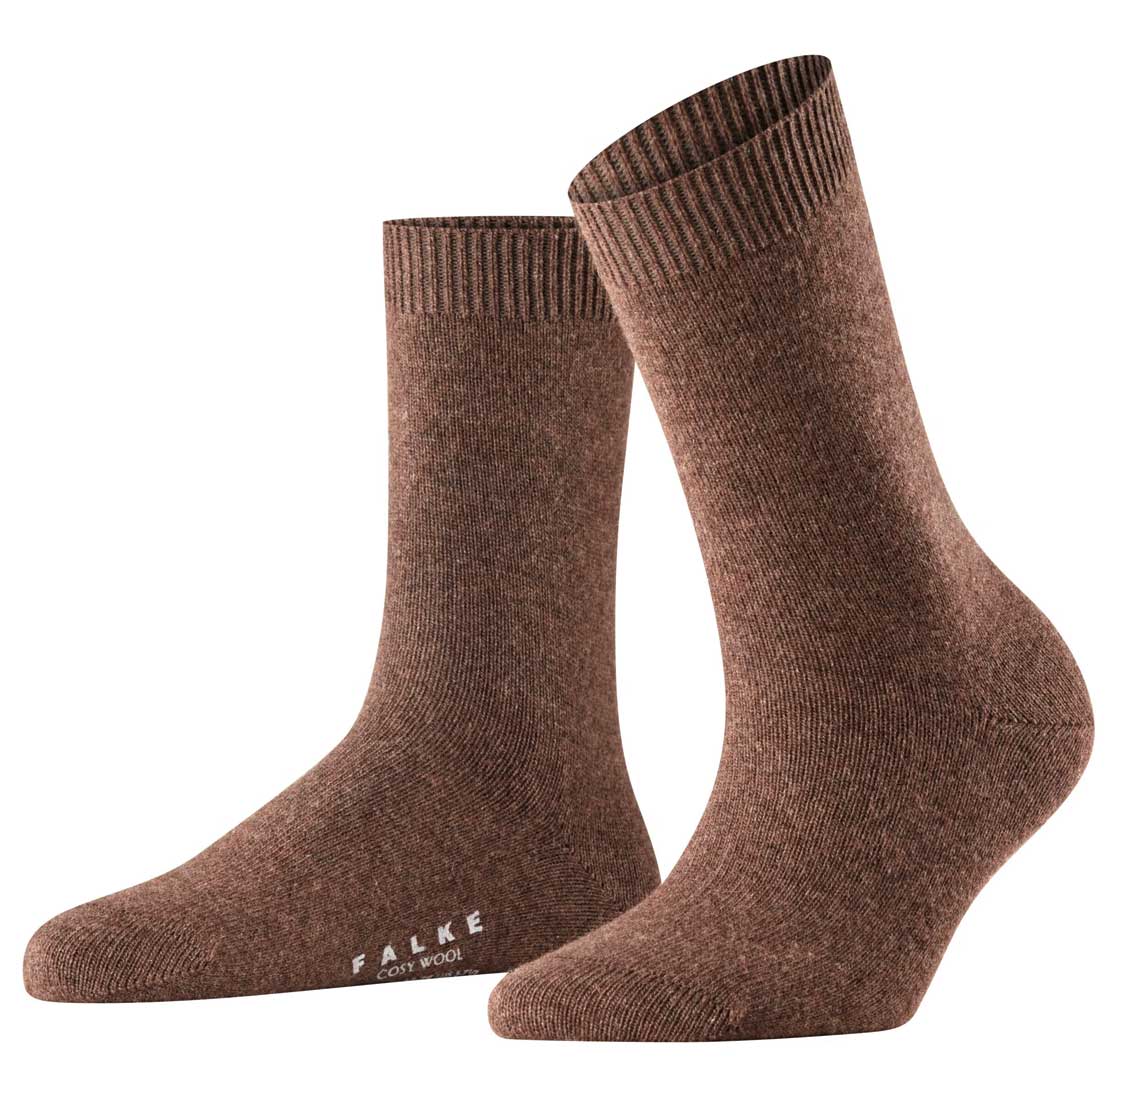 Falke Cozy Wool Socks and Cashmere - luxury wool socks in nice colours